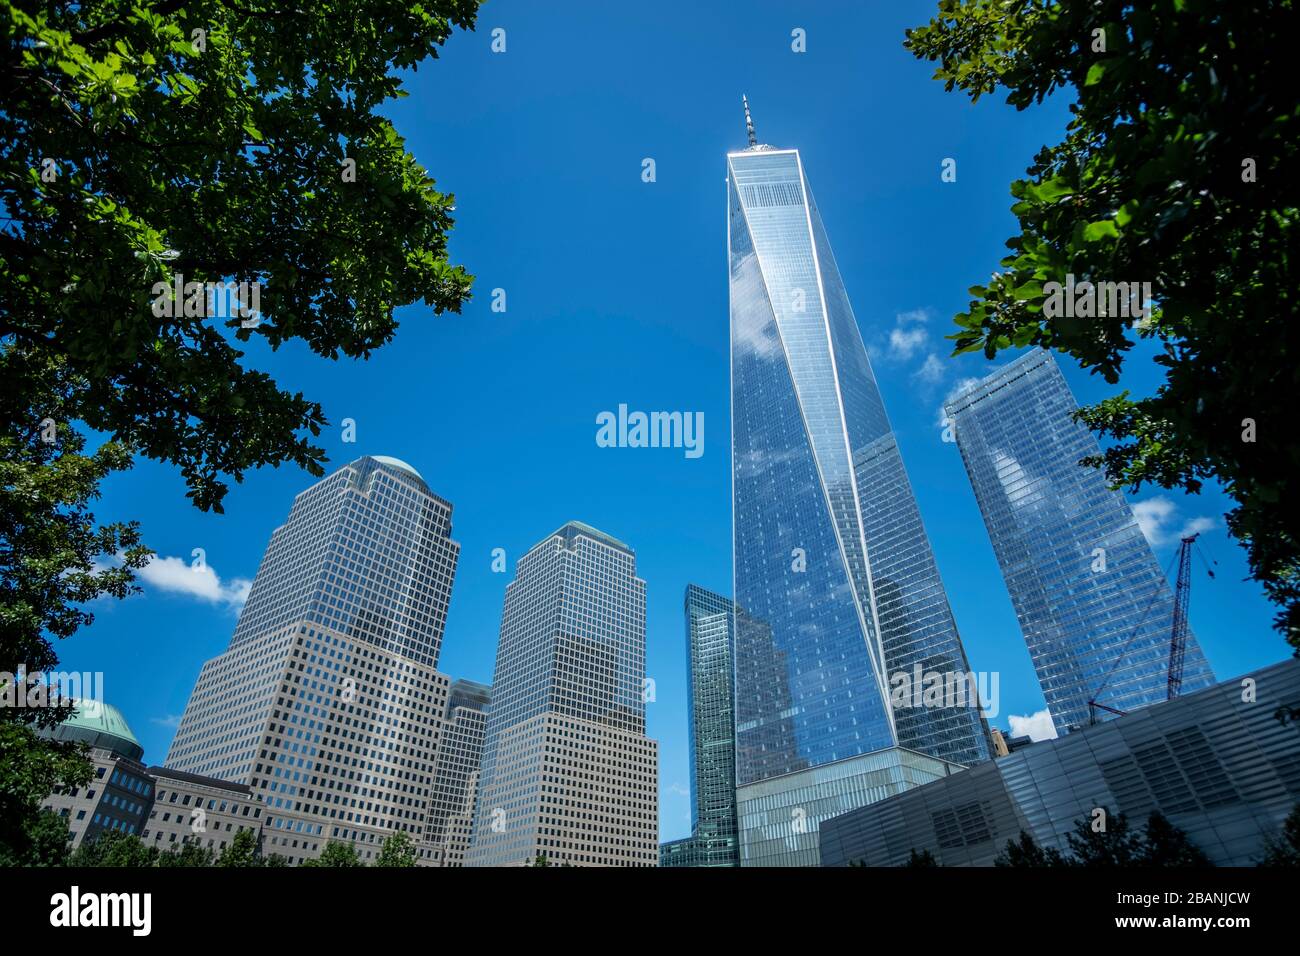 One World Tower, New York Stock Photo